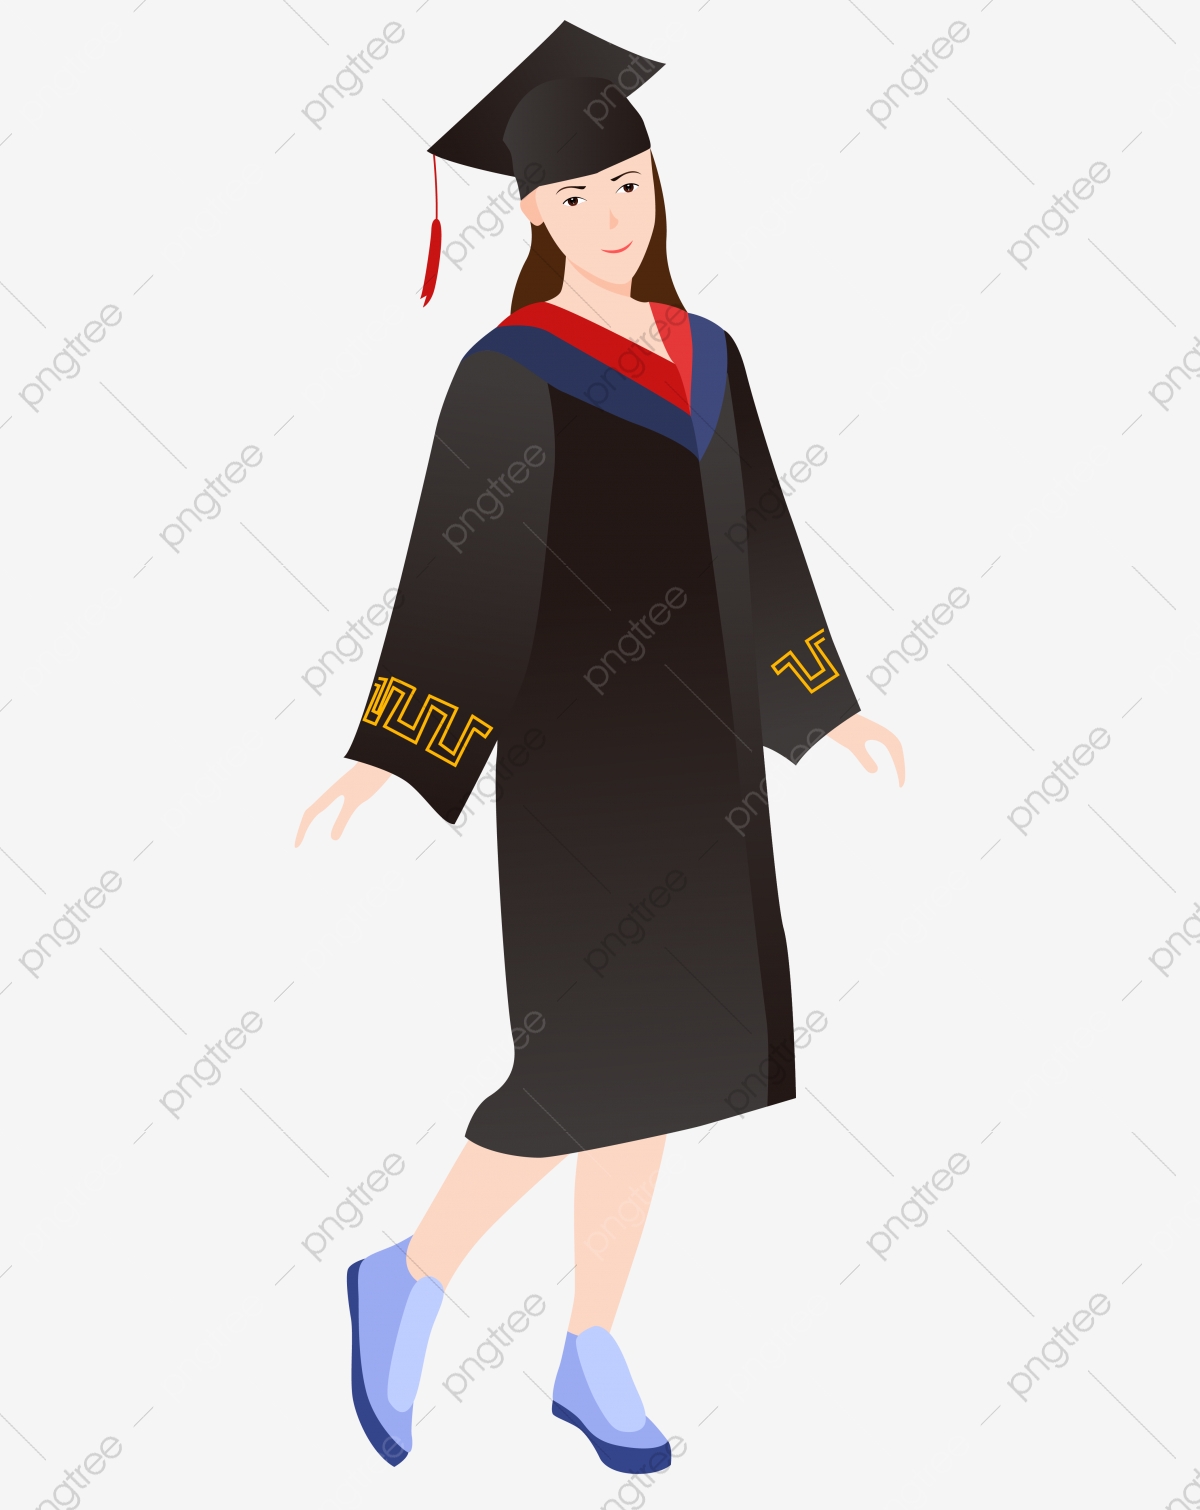 graduation clipart attire